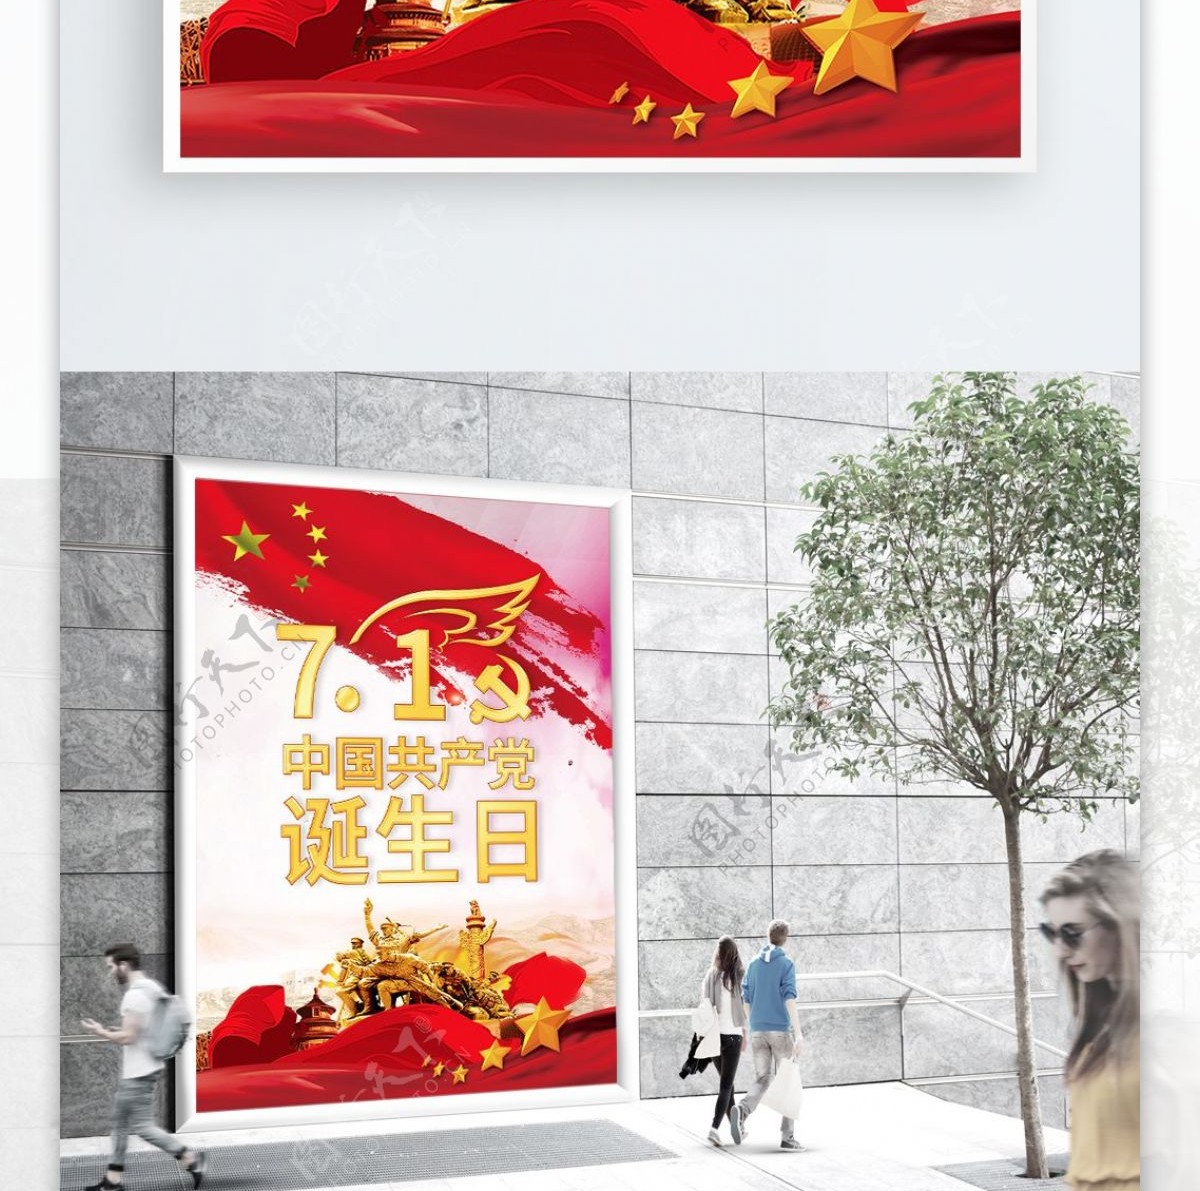 中国诞生日海报